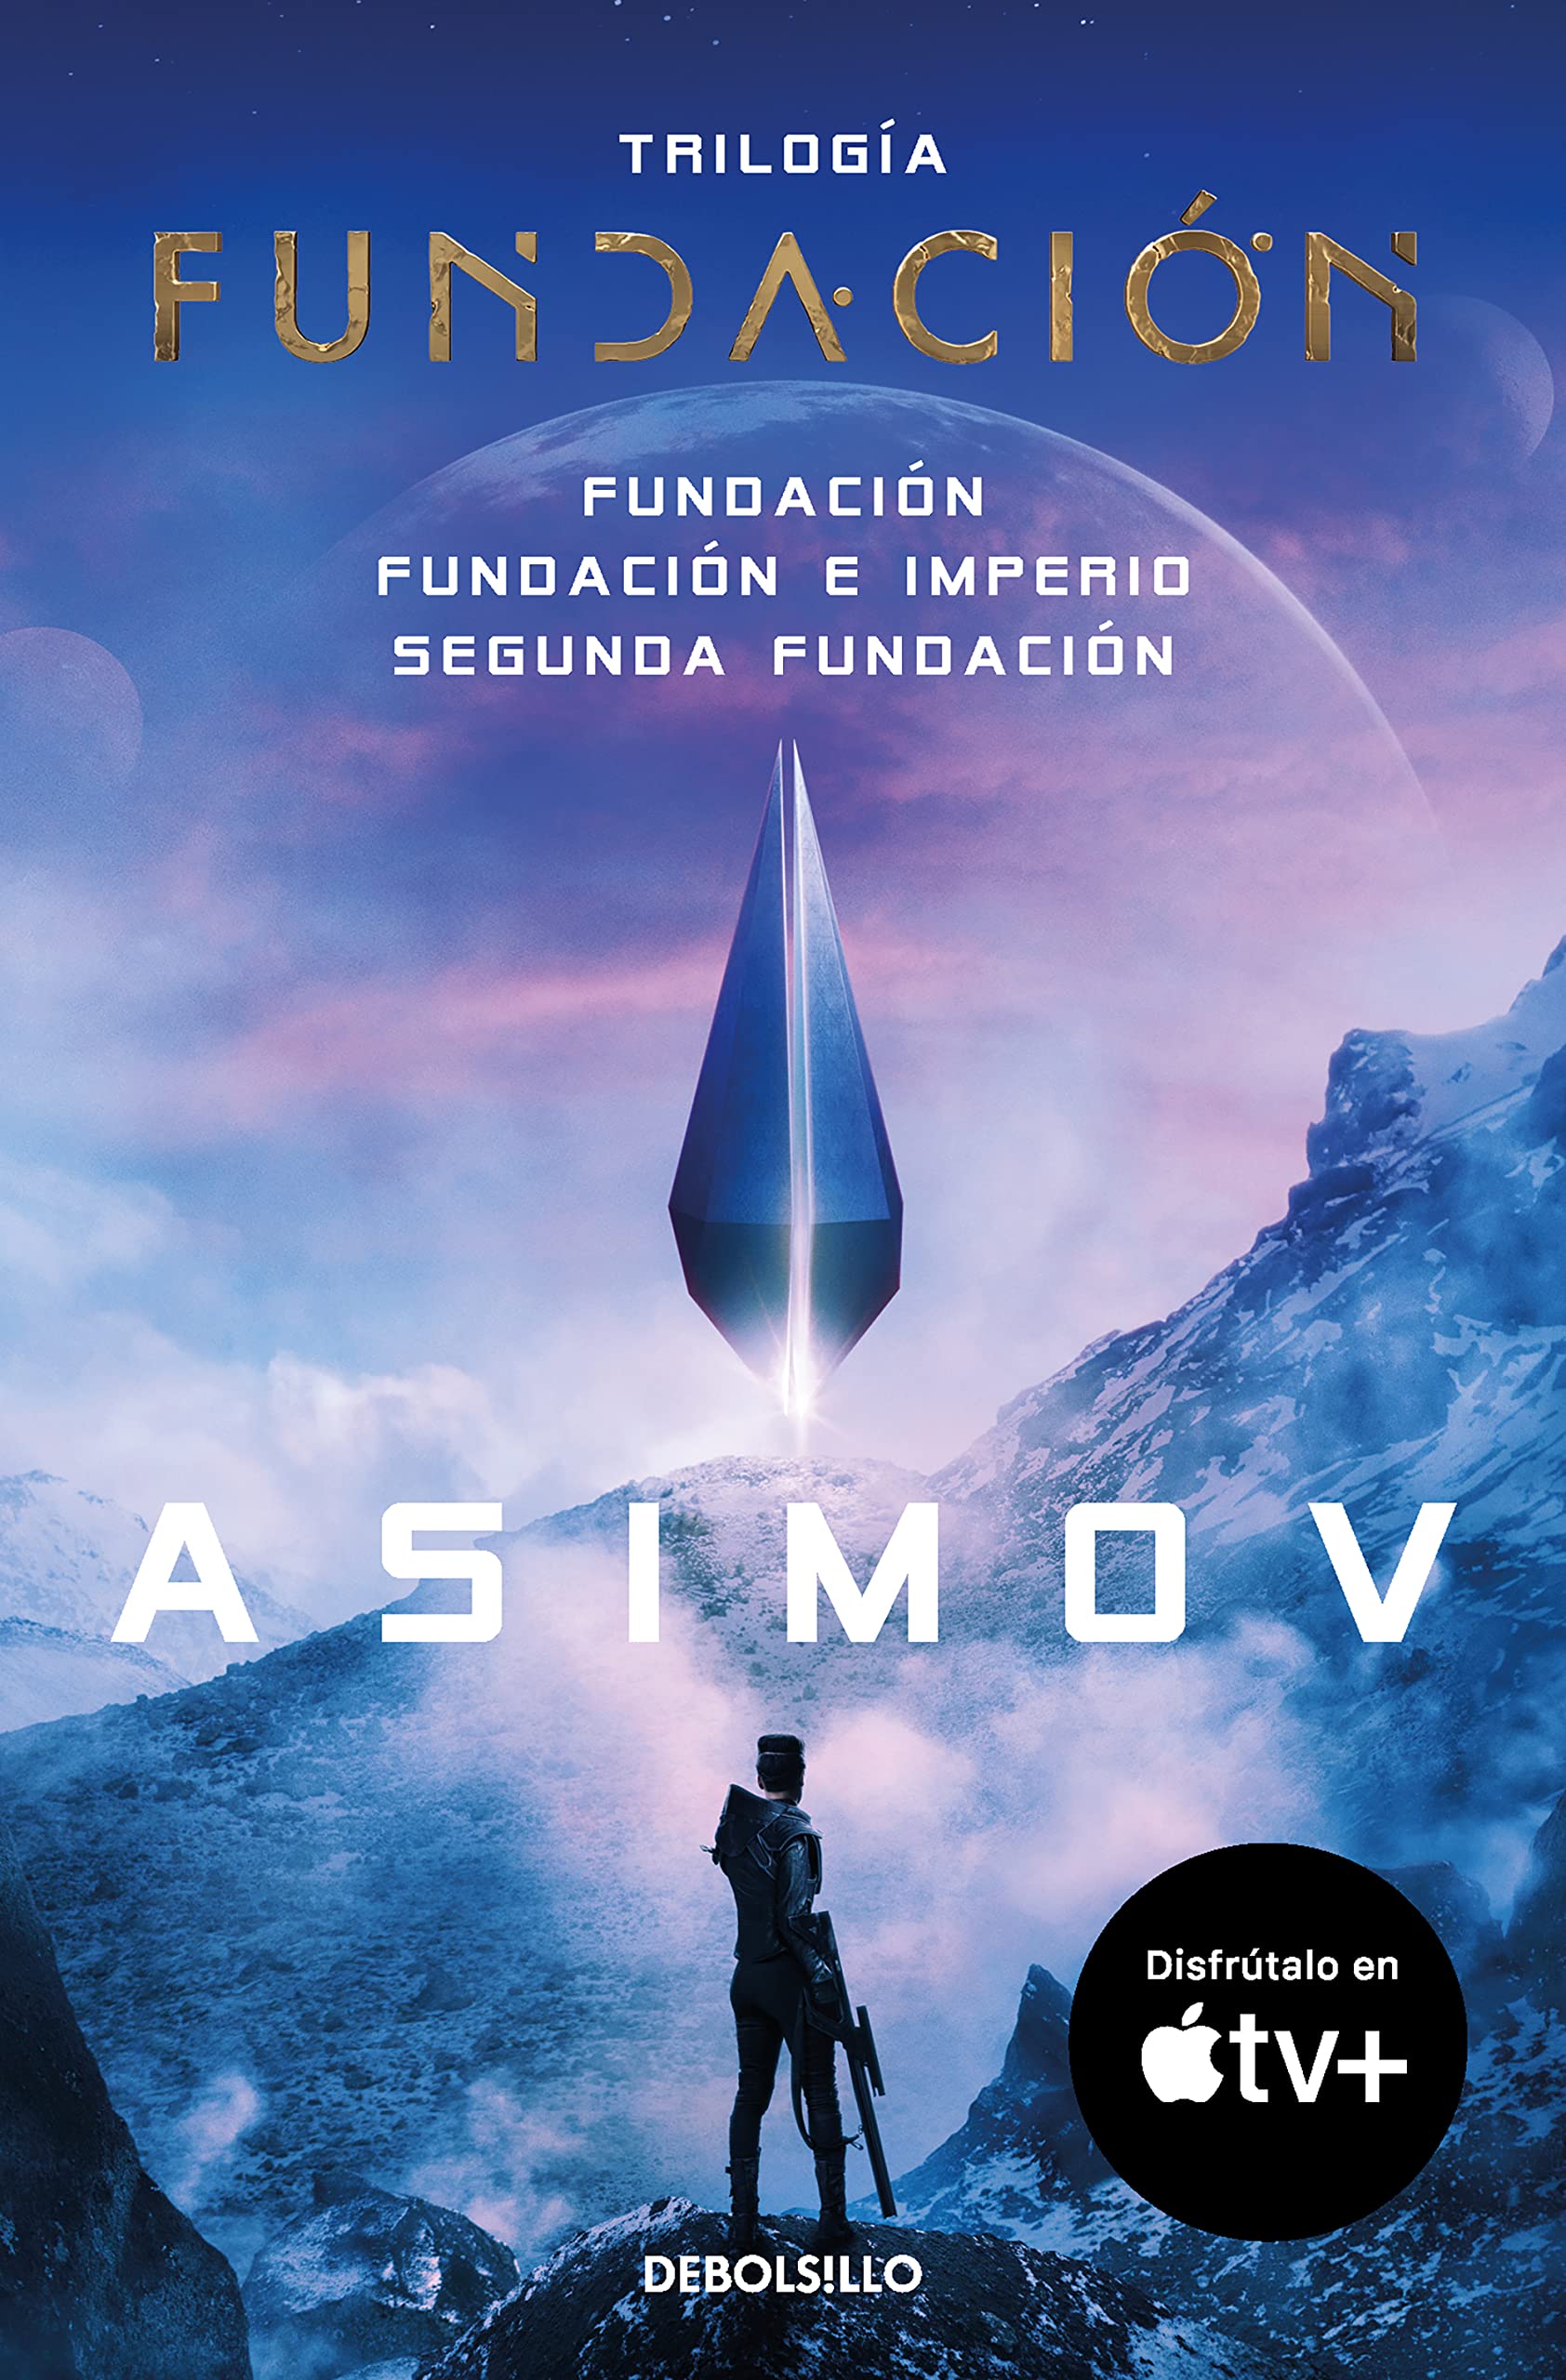 Trilogía de la fundación. Isaac Asimov (2010)